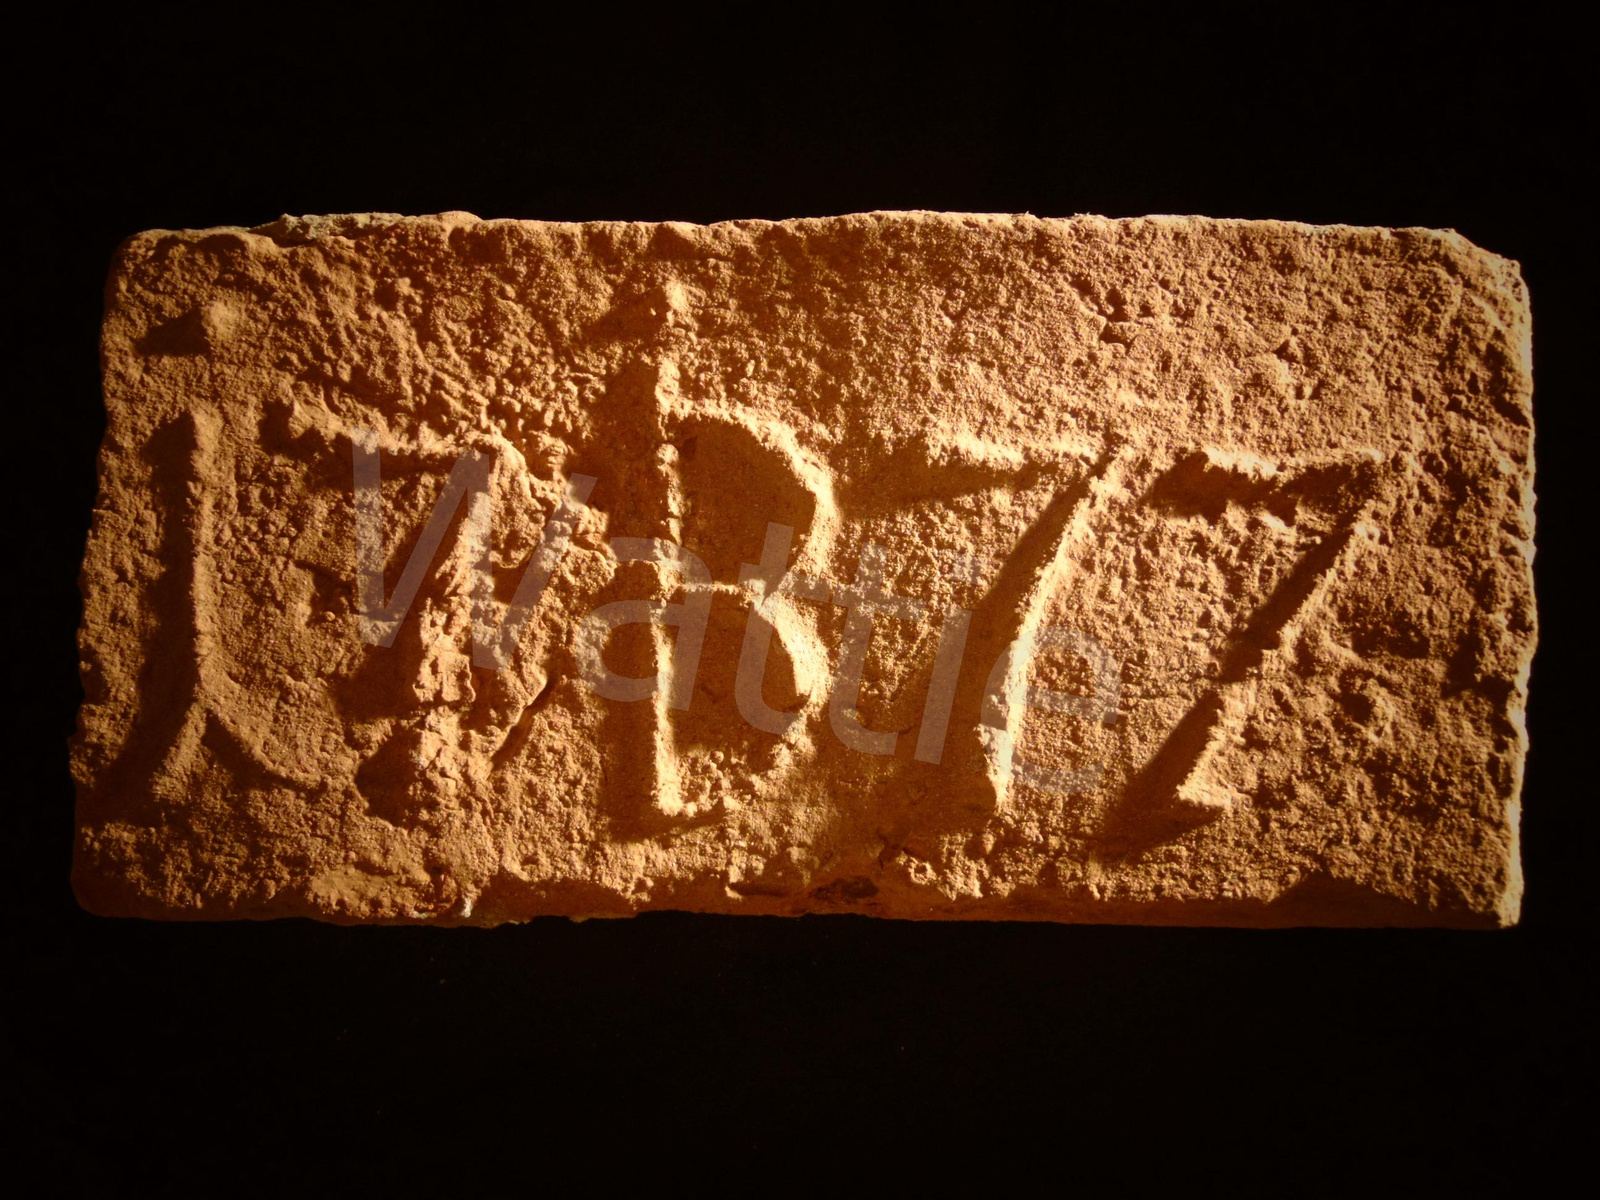 IB 1772 (Iosephus Batthyány, Batthyány József kalocsai érsek, Ka